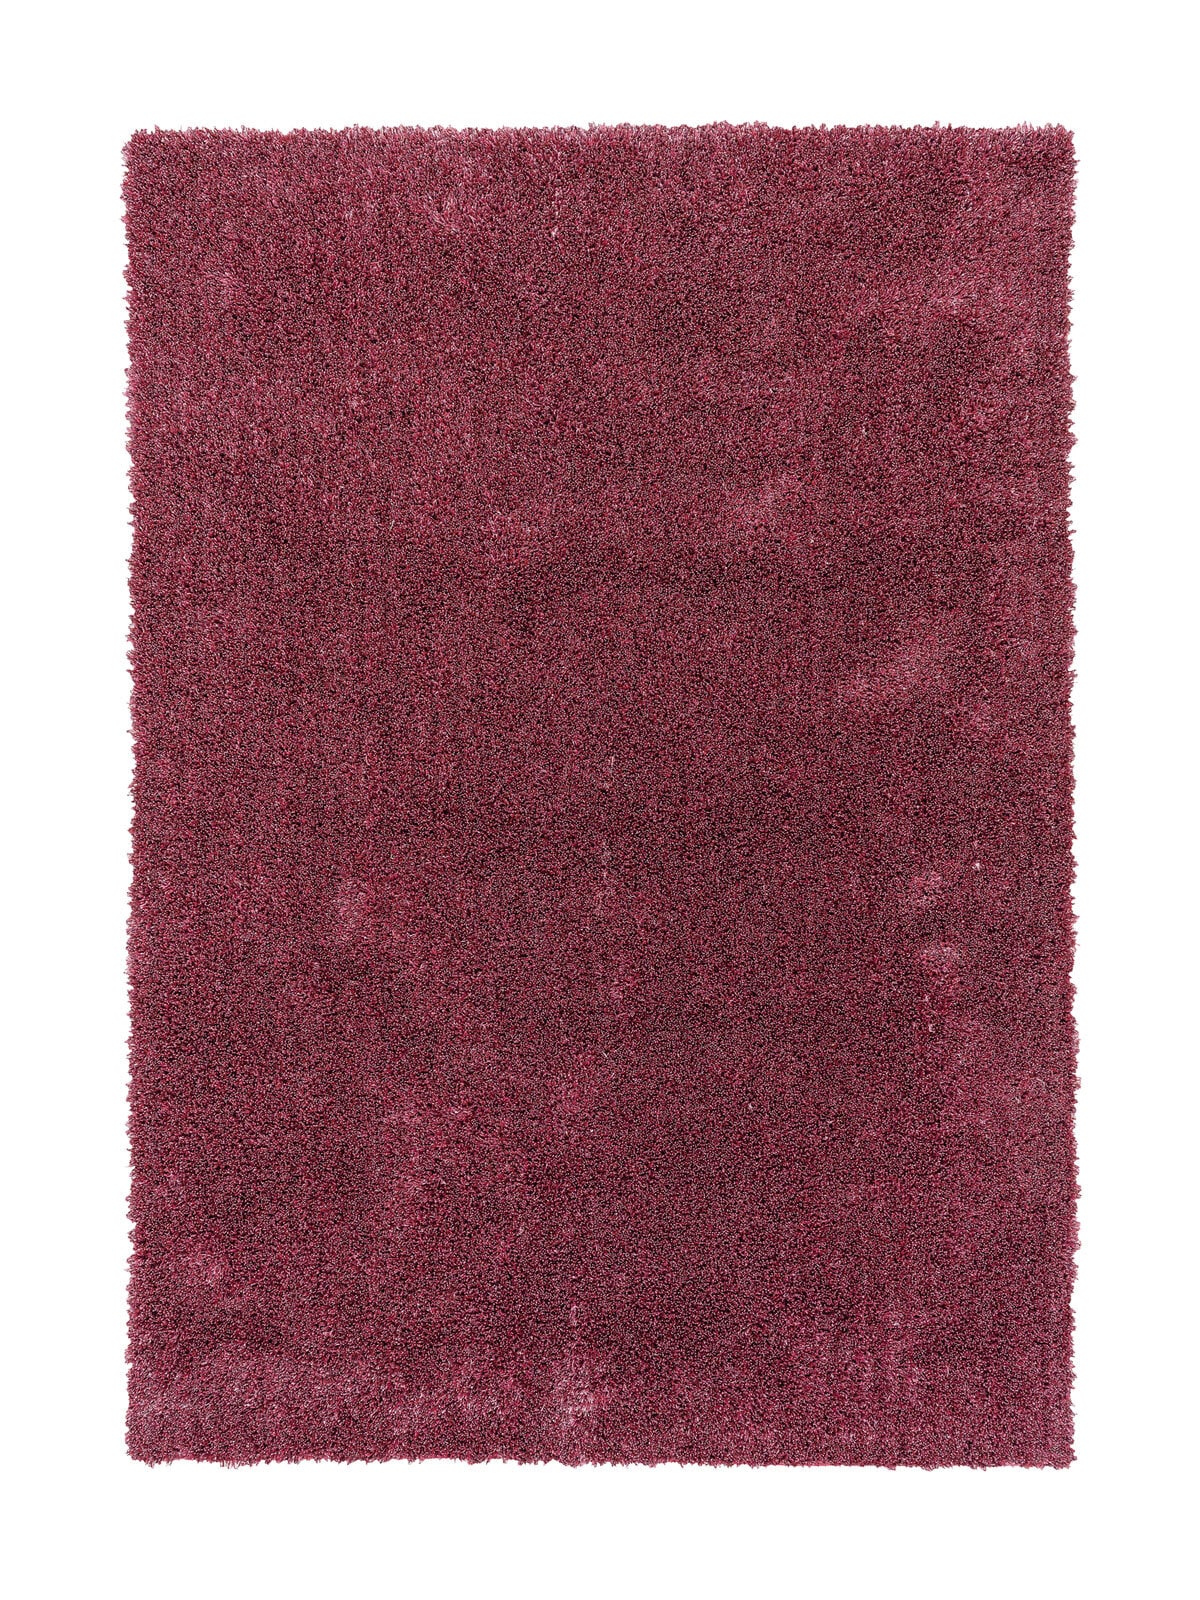 SCHÖNER WOHNEN-Kollektion Hochflorteppich NEW FEELING 170 x 240 cm rosa 